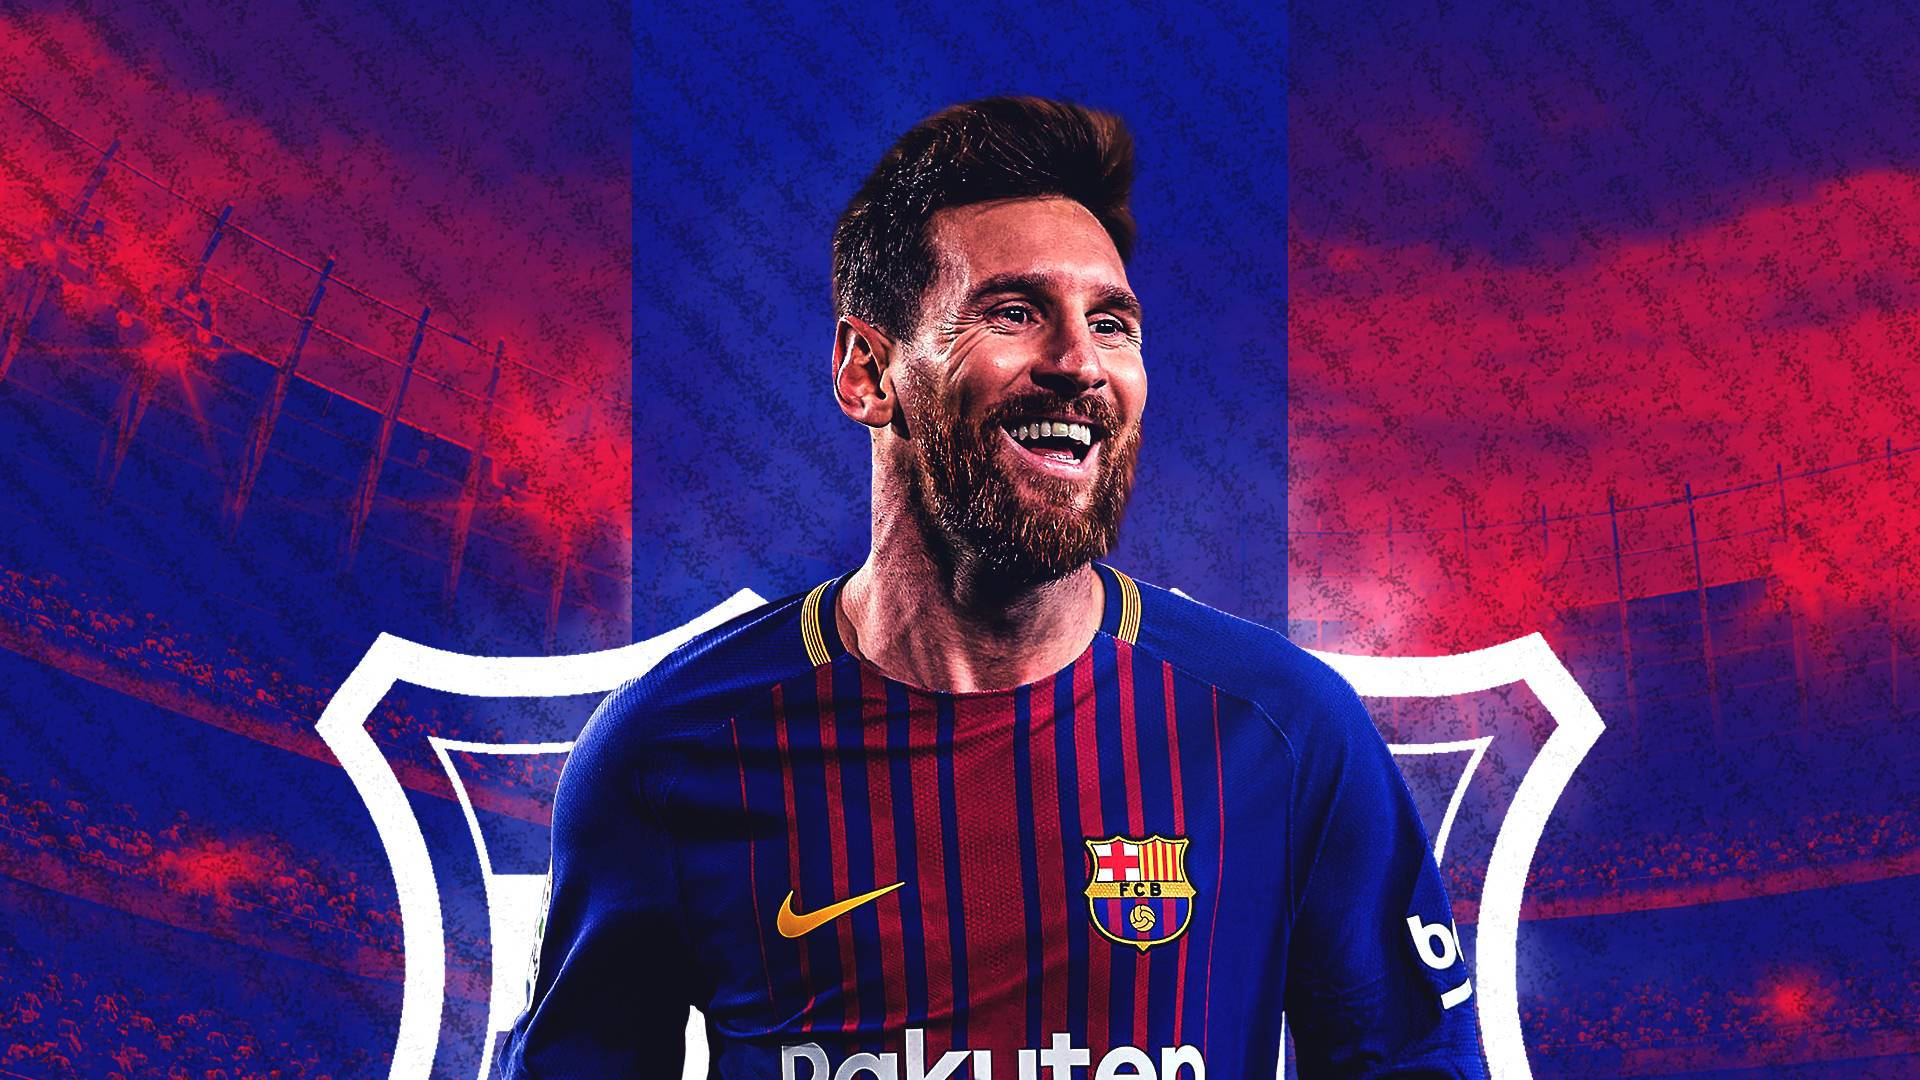 Tải ảnh nền Messi: Hình ảnh Messi luôn là niềm tự hào của mọi fan hâm mộ. Bạn đang tìm kiếm những bức ảnh nền đẹp và độc đáo của ngôi sao ấy? Hãy truy cập để tải về ngay những bức ảnh hấp dẫn nhất về Messi để làm nền cho điện thoại, máy tính của bạn.